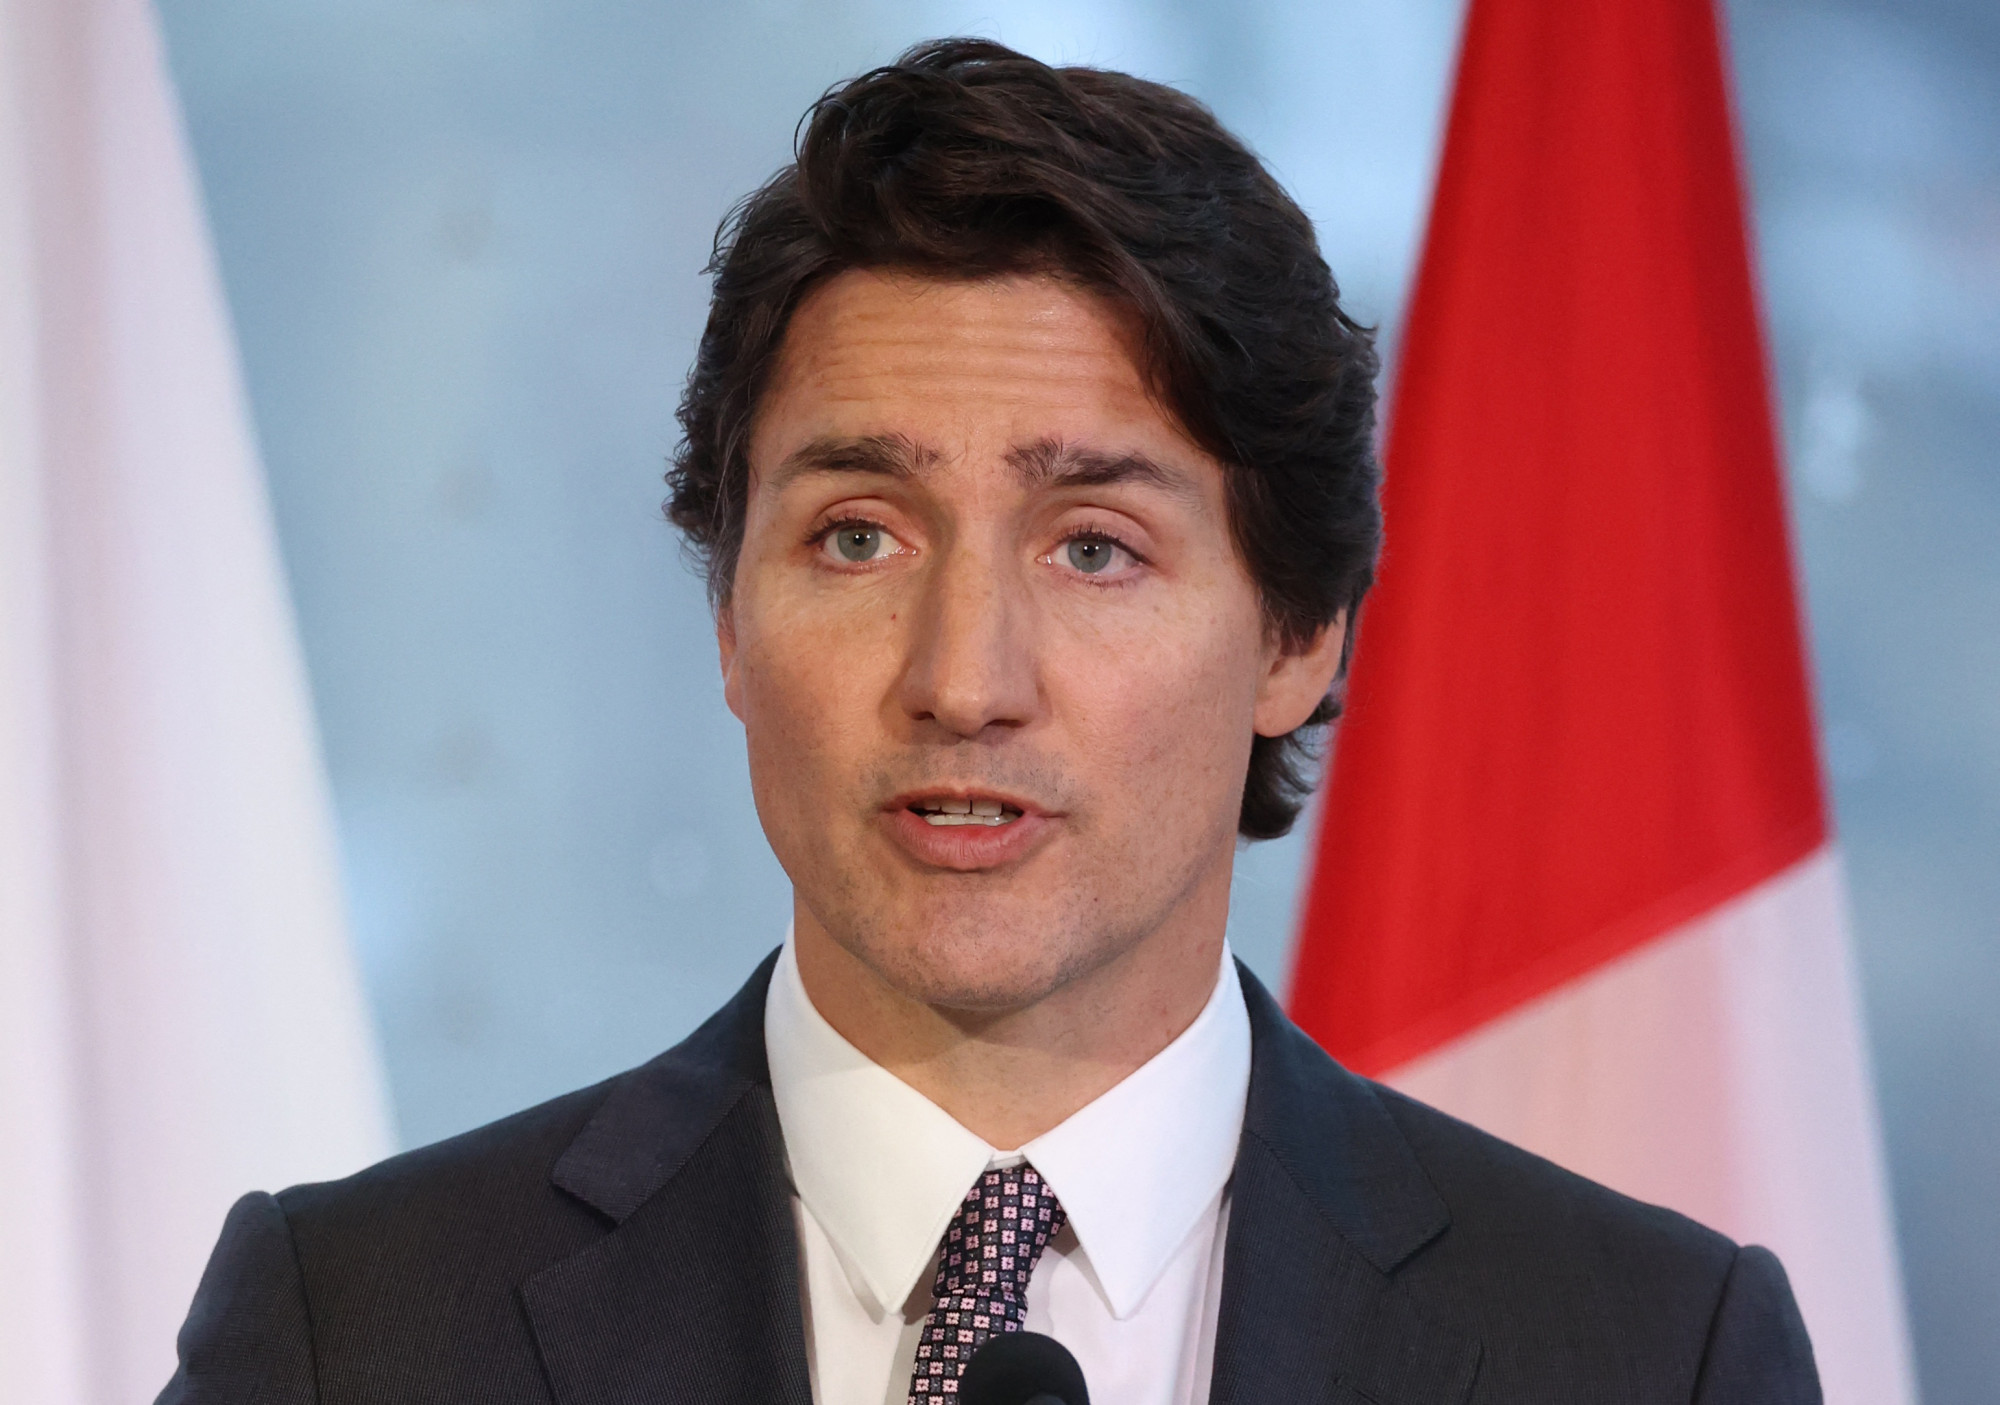 Kína megpróbált beavatkozni a kanadai választásokba